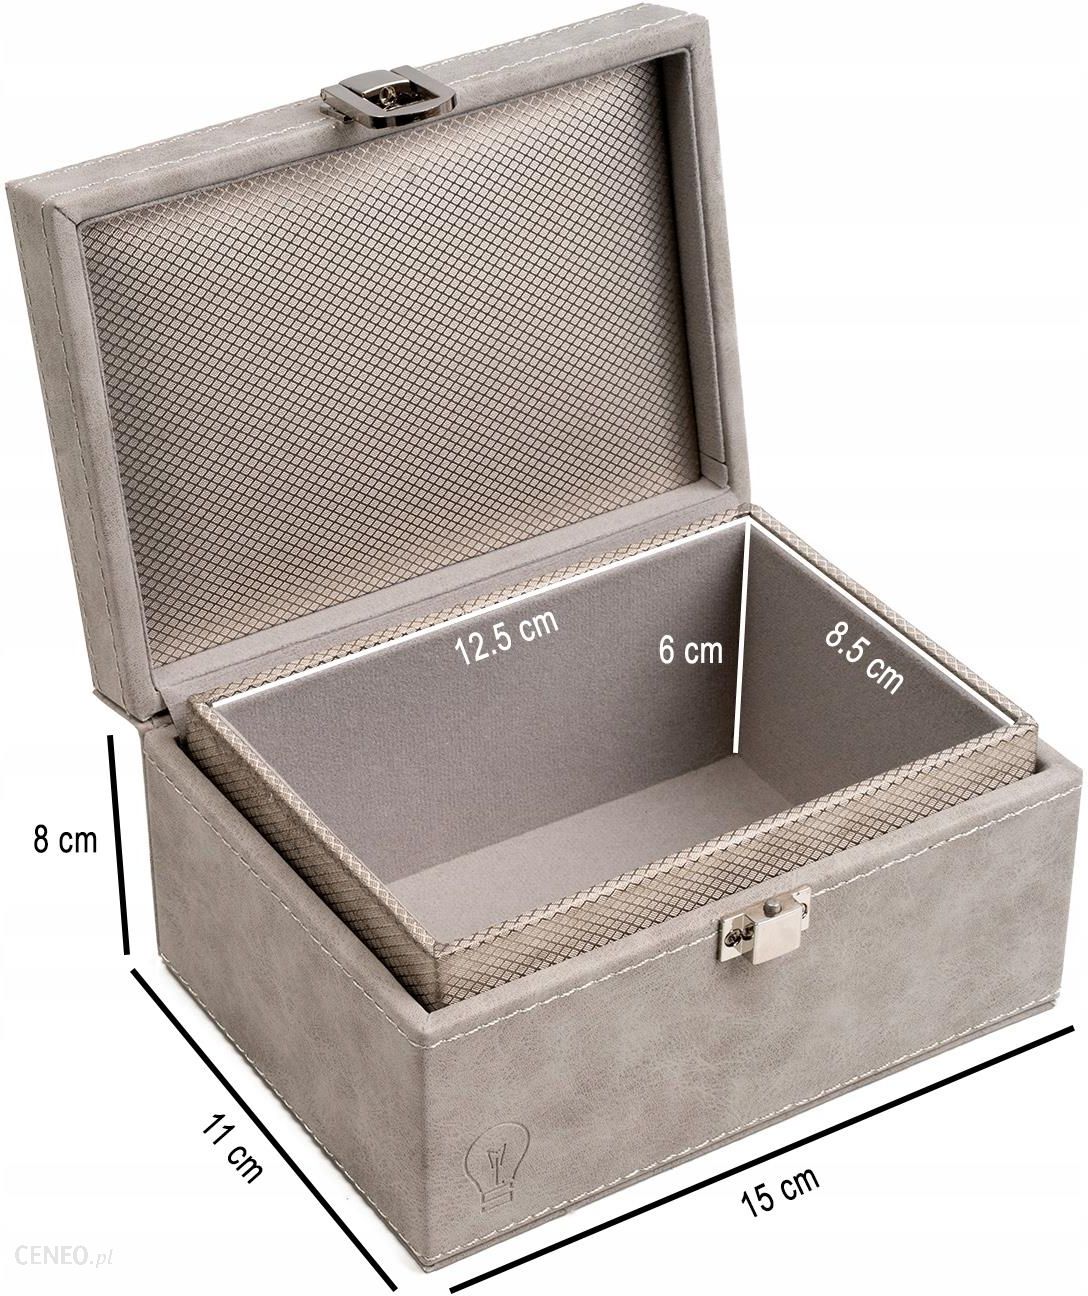 Make Life Simple Pudełko Na Kluczyk Faraday Box Plus Etui Keyless Szare -  Opinie i ceny na